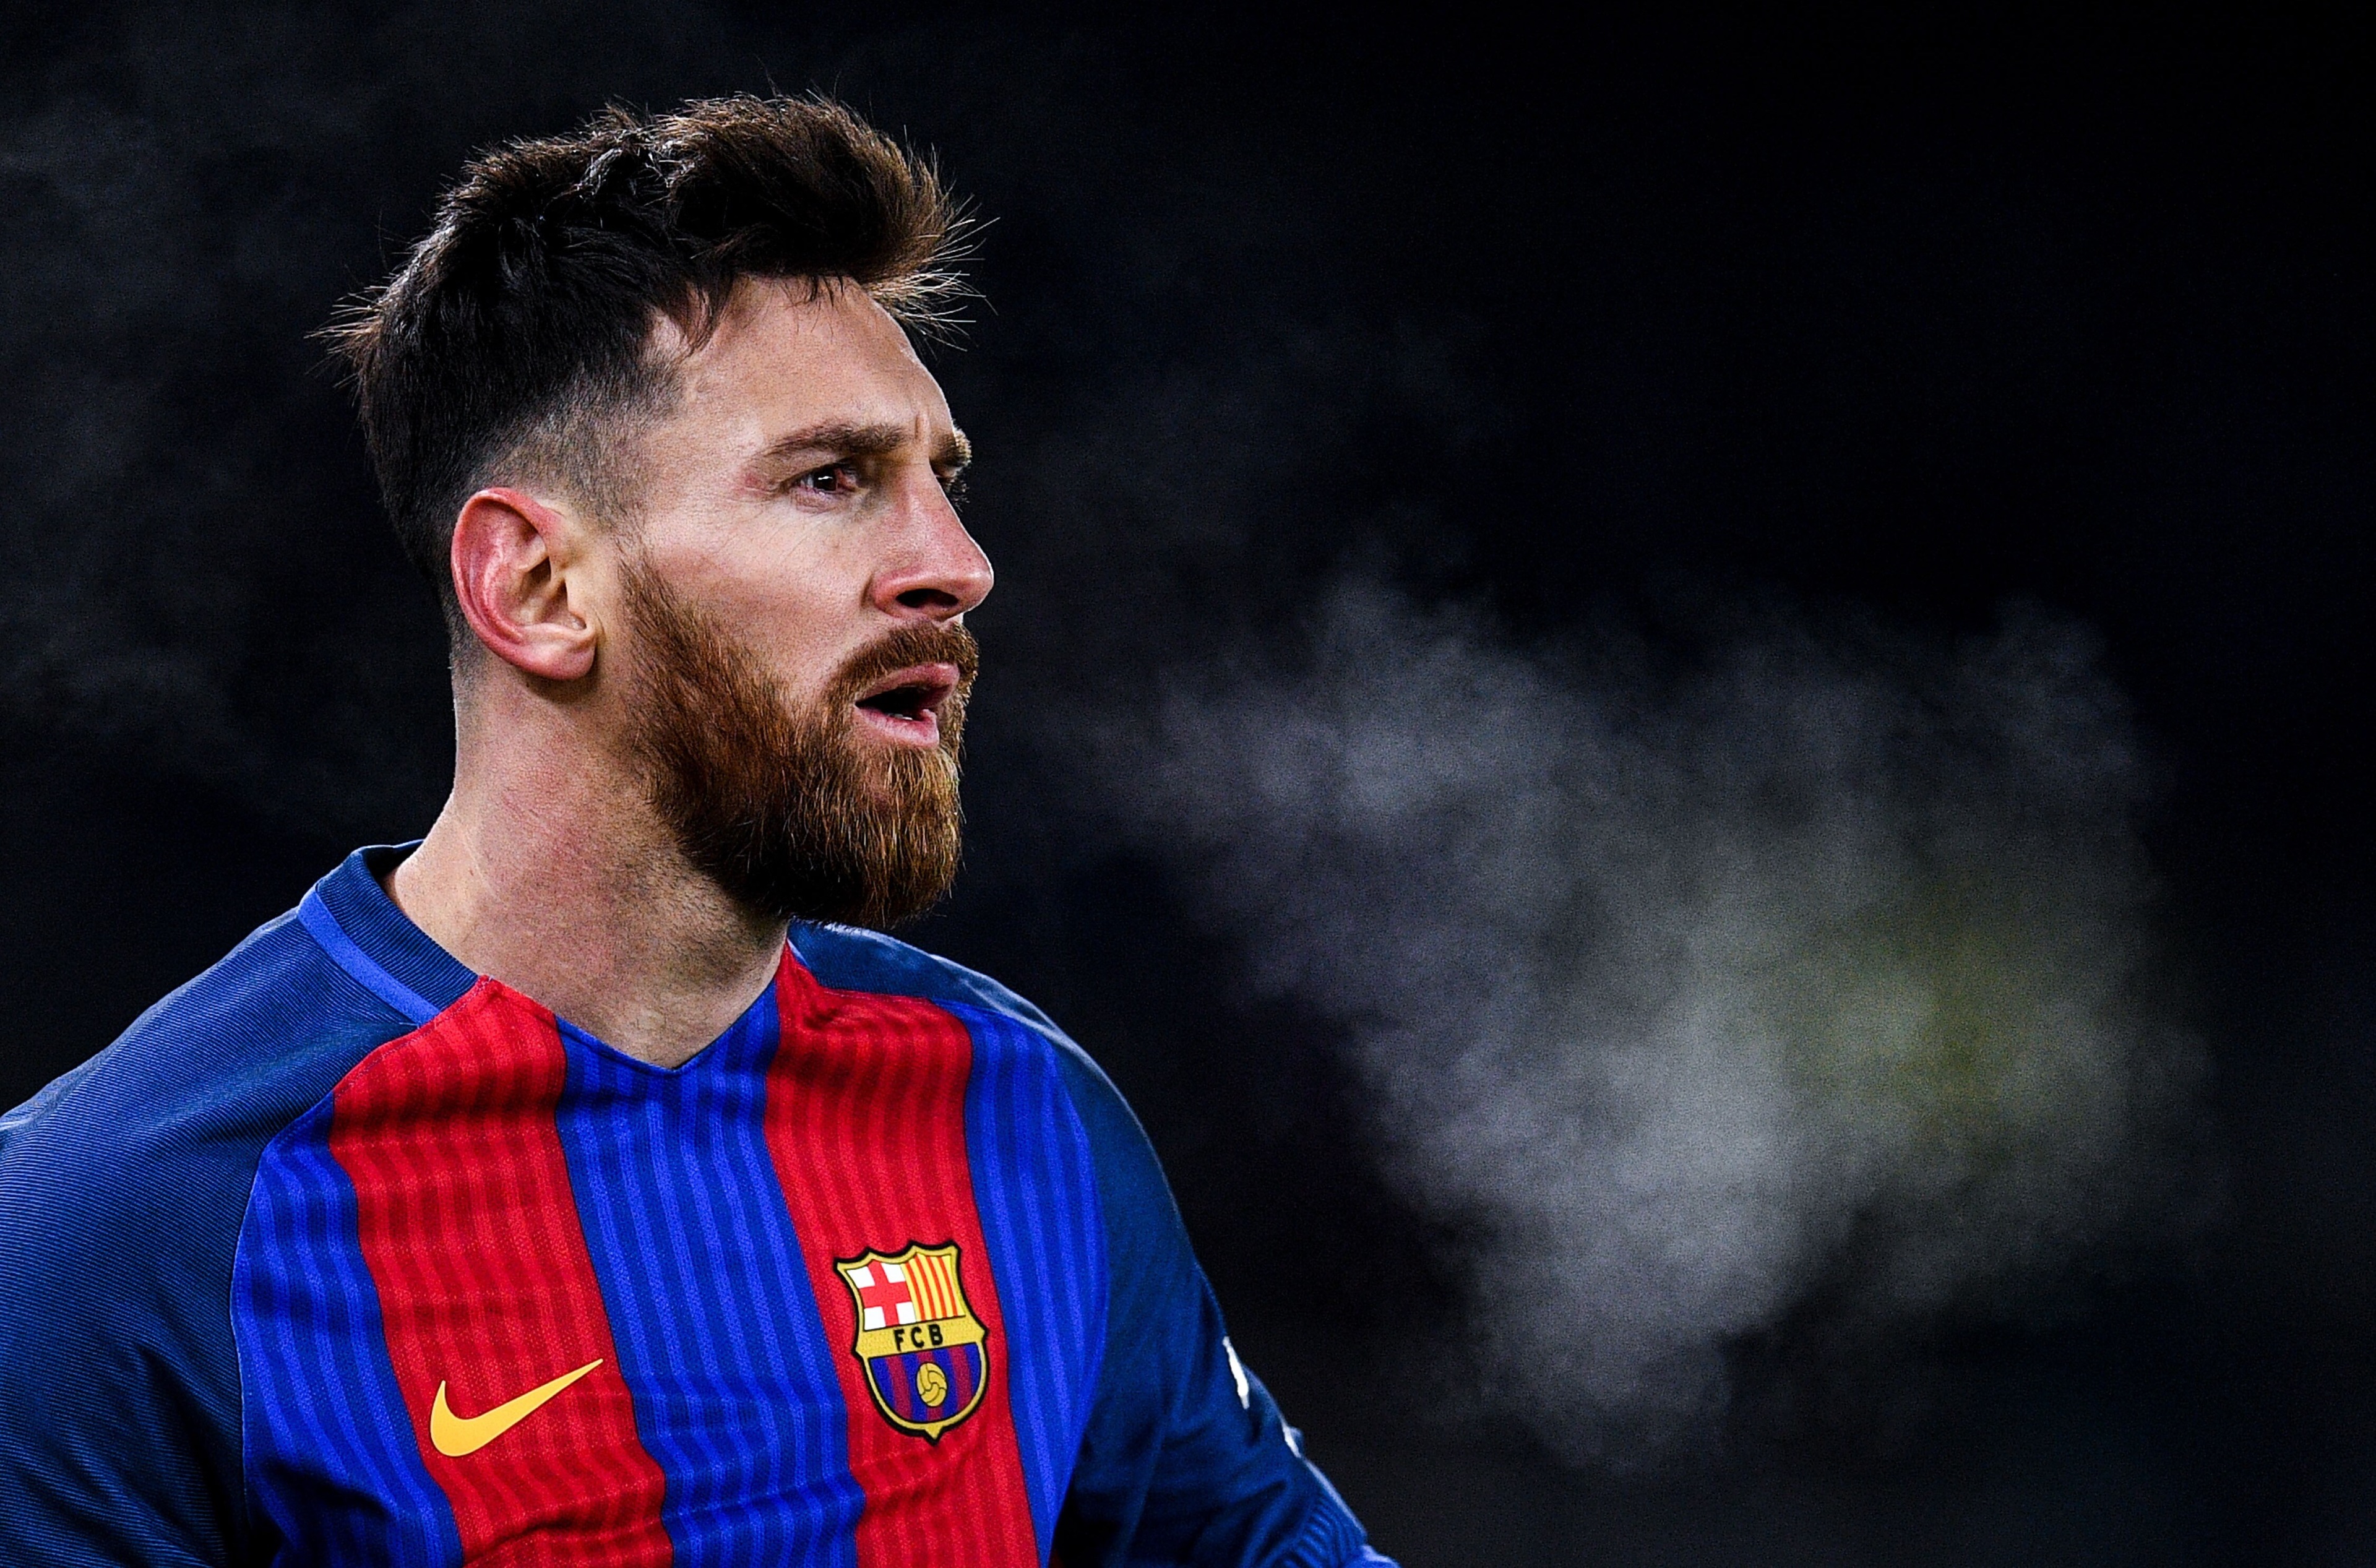 Duyệt qua những tấm ảnh đẹp và cập nhật mới nhất về siêu sao bóng đá này. Bộ sưu tập ảnh Messi 4K và hình nền Messi 2022 sẽ giữ cho bạn luôn cập nhật về những thông tin mới nhất về Messi và đội bóng yêu thích của bạn.